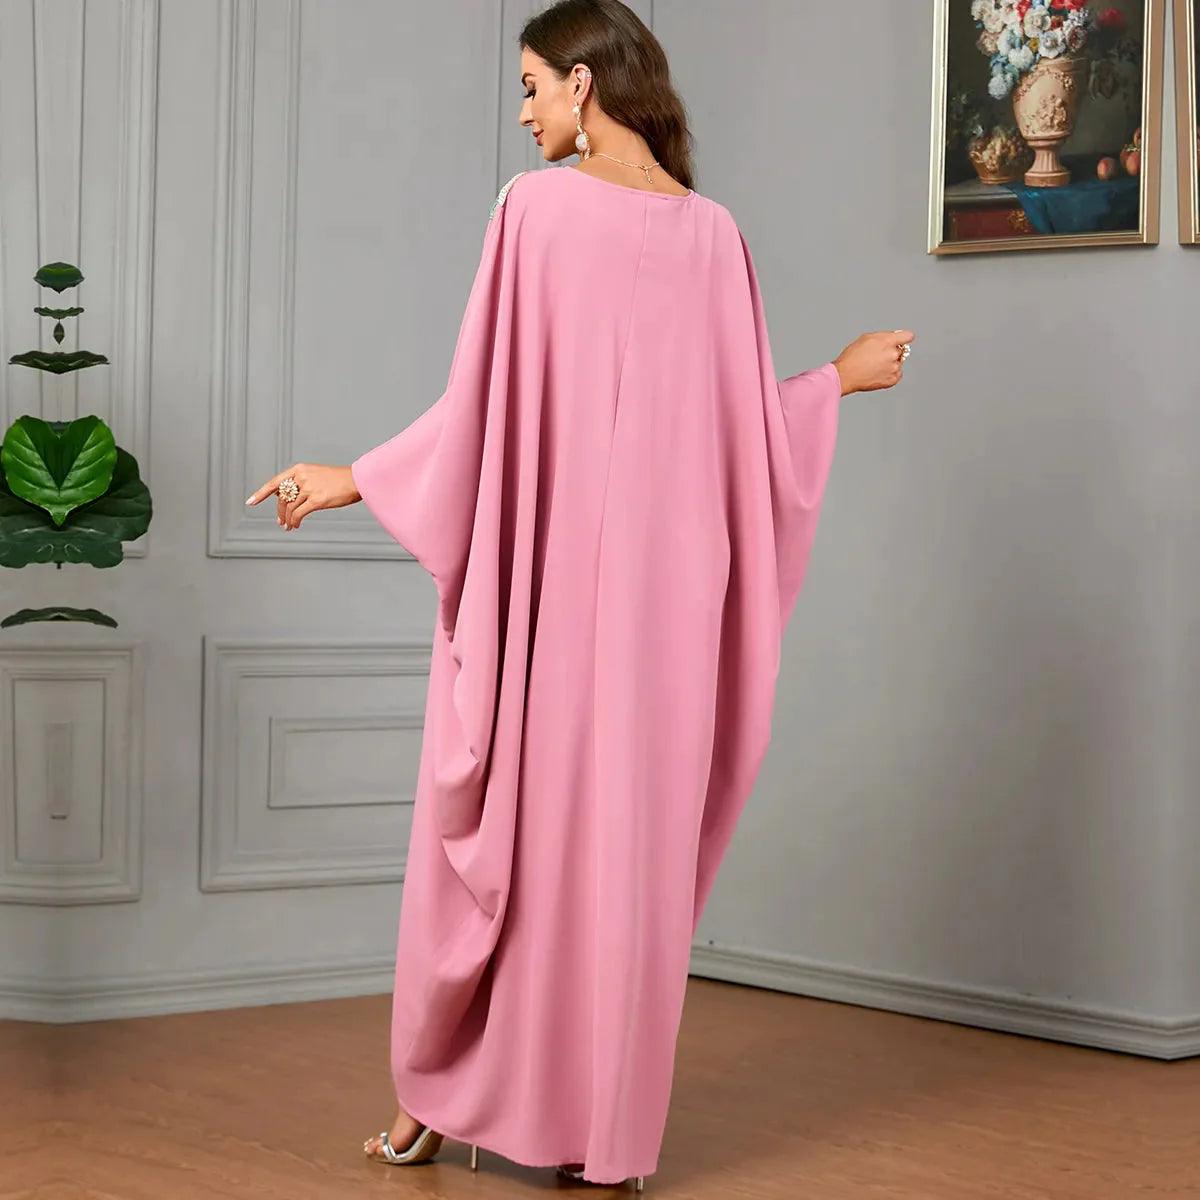 On sale - Muslim Abaya Dress - Pink - Free shipping -